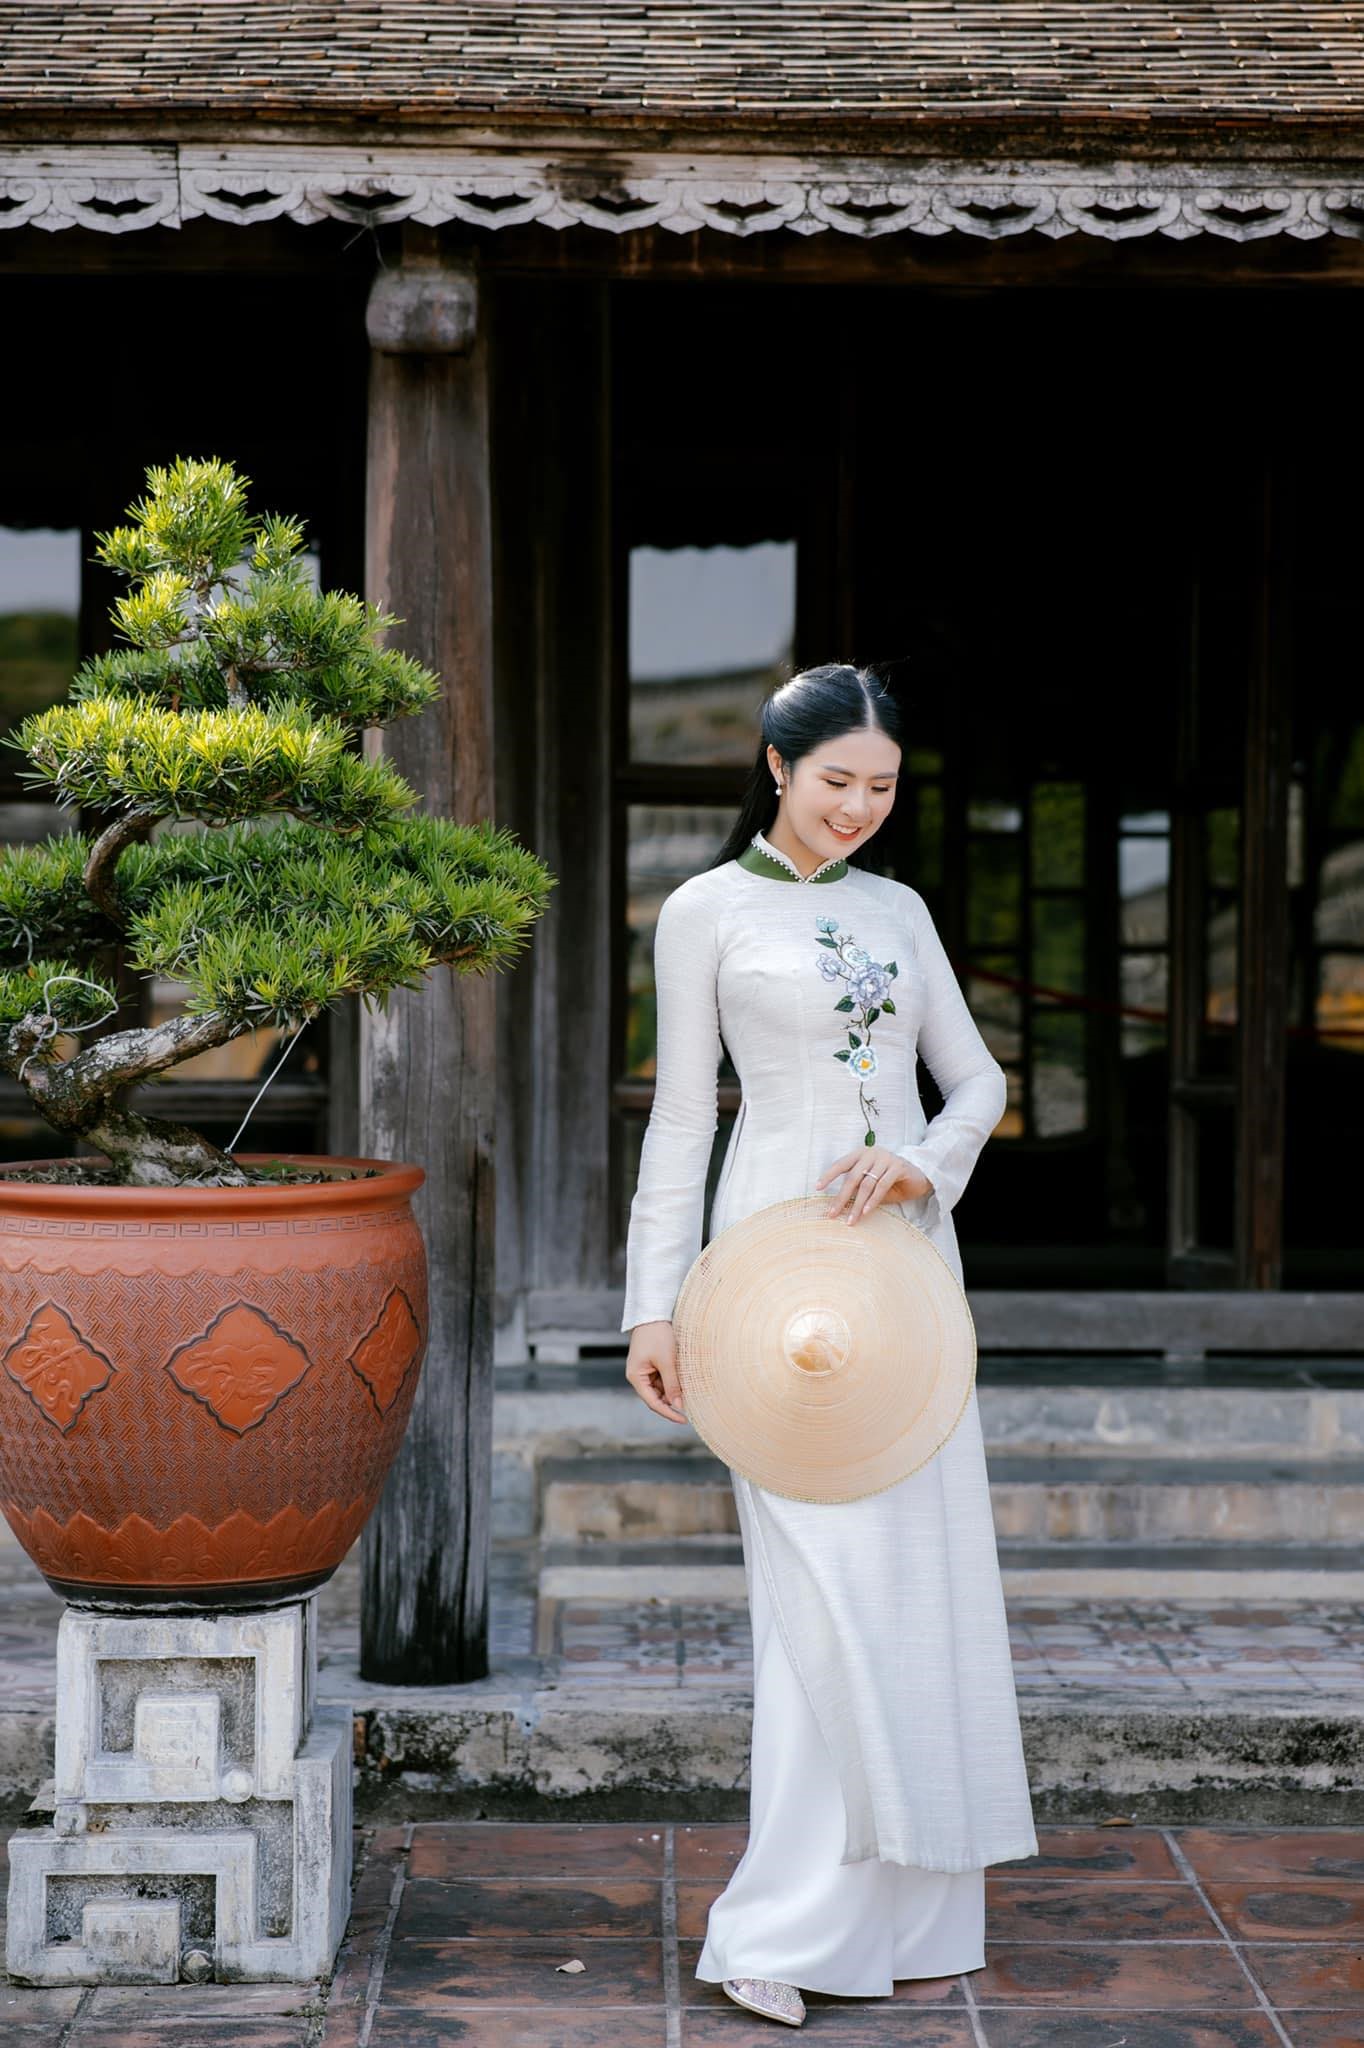 Hoa hậu Đặng Ngọc Hân là nhà thiết kế chuyên về áo dài truyền thống. Ảnh: Facebook Ngọc Hân